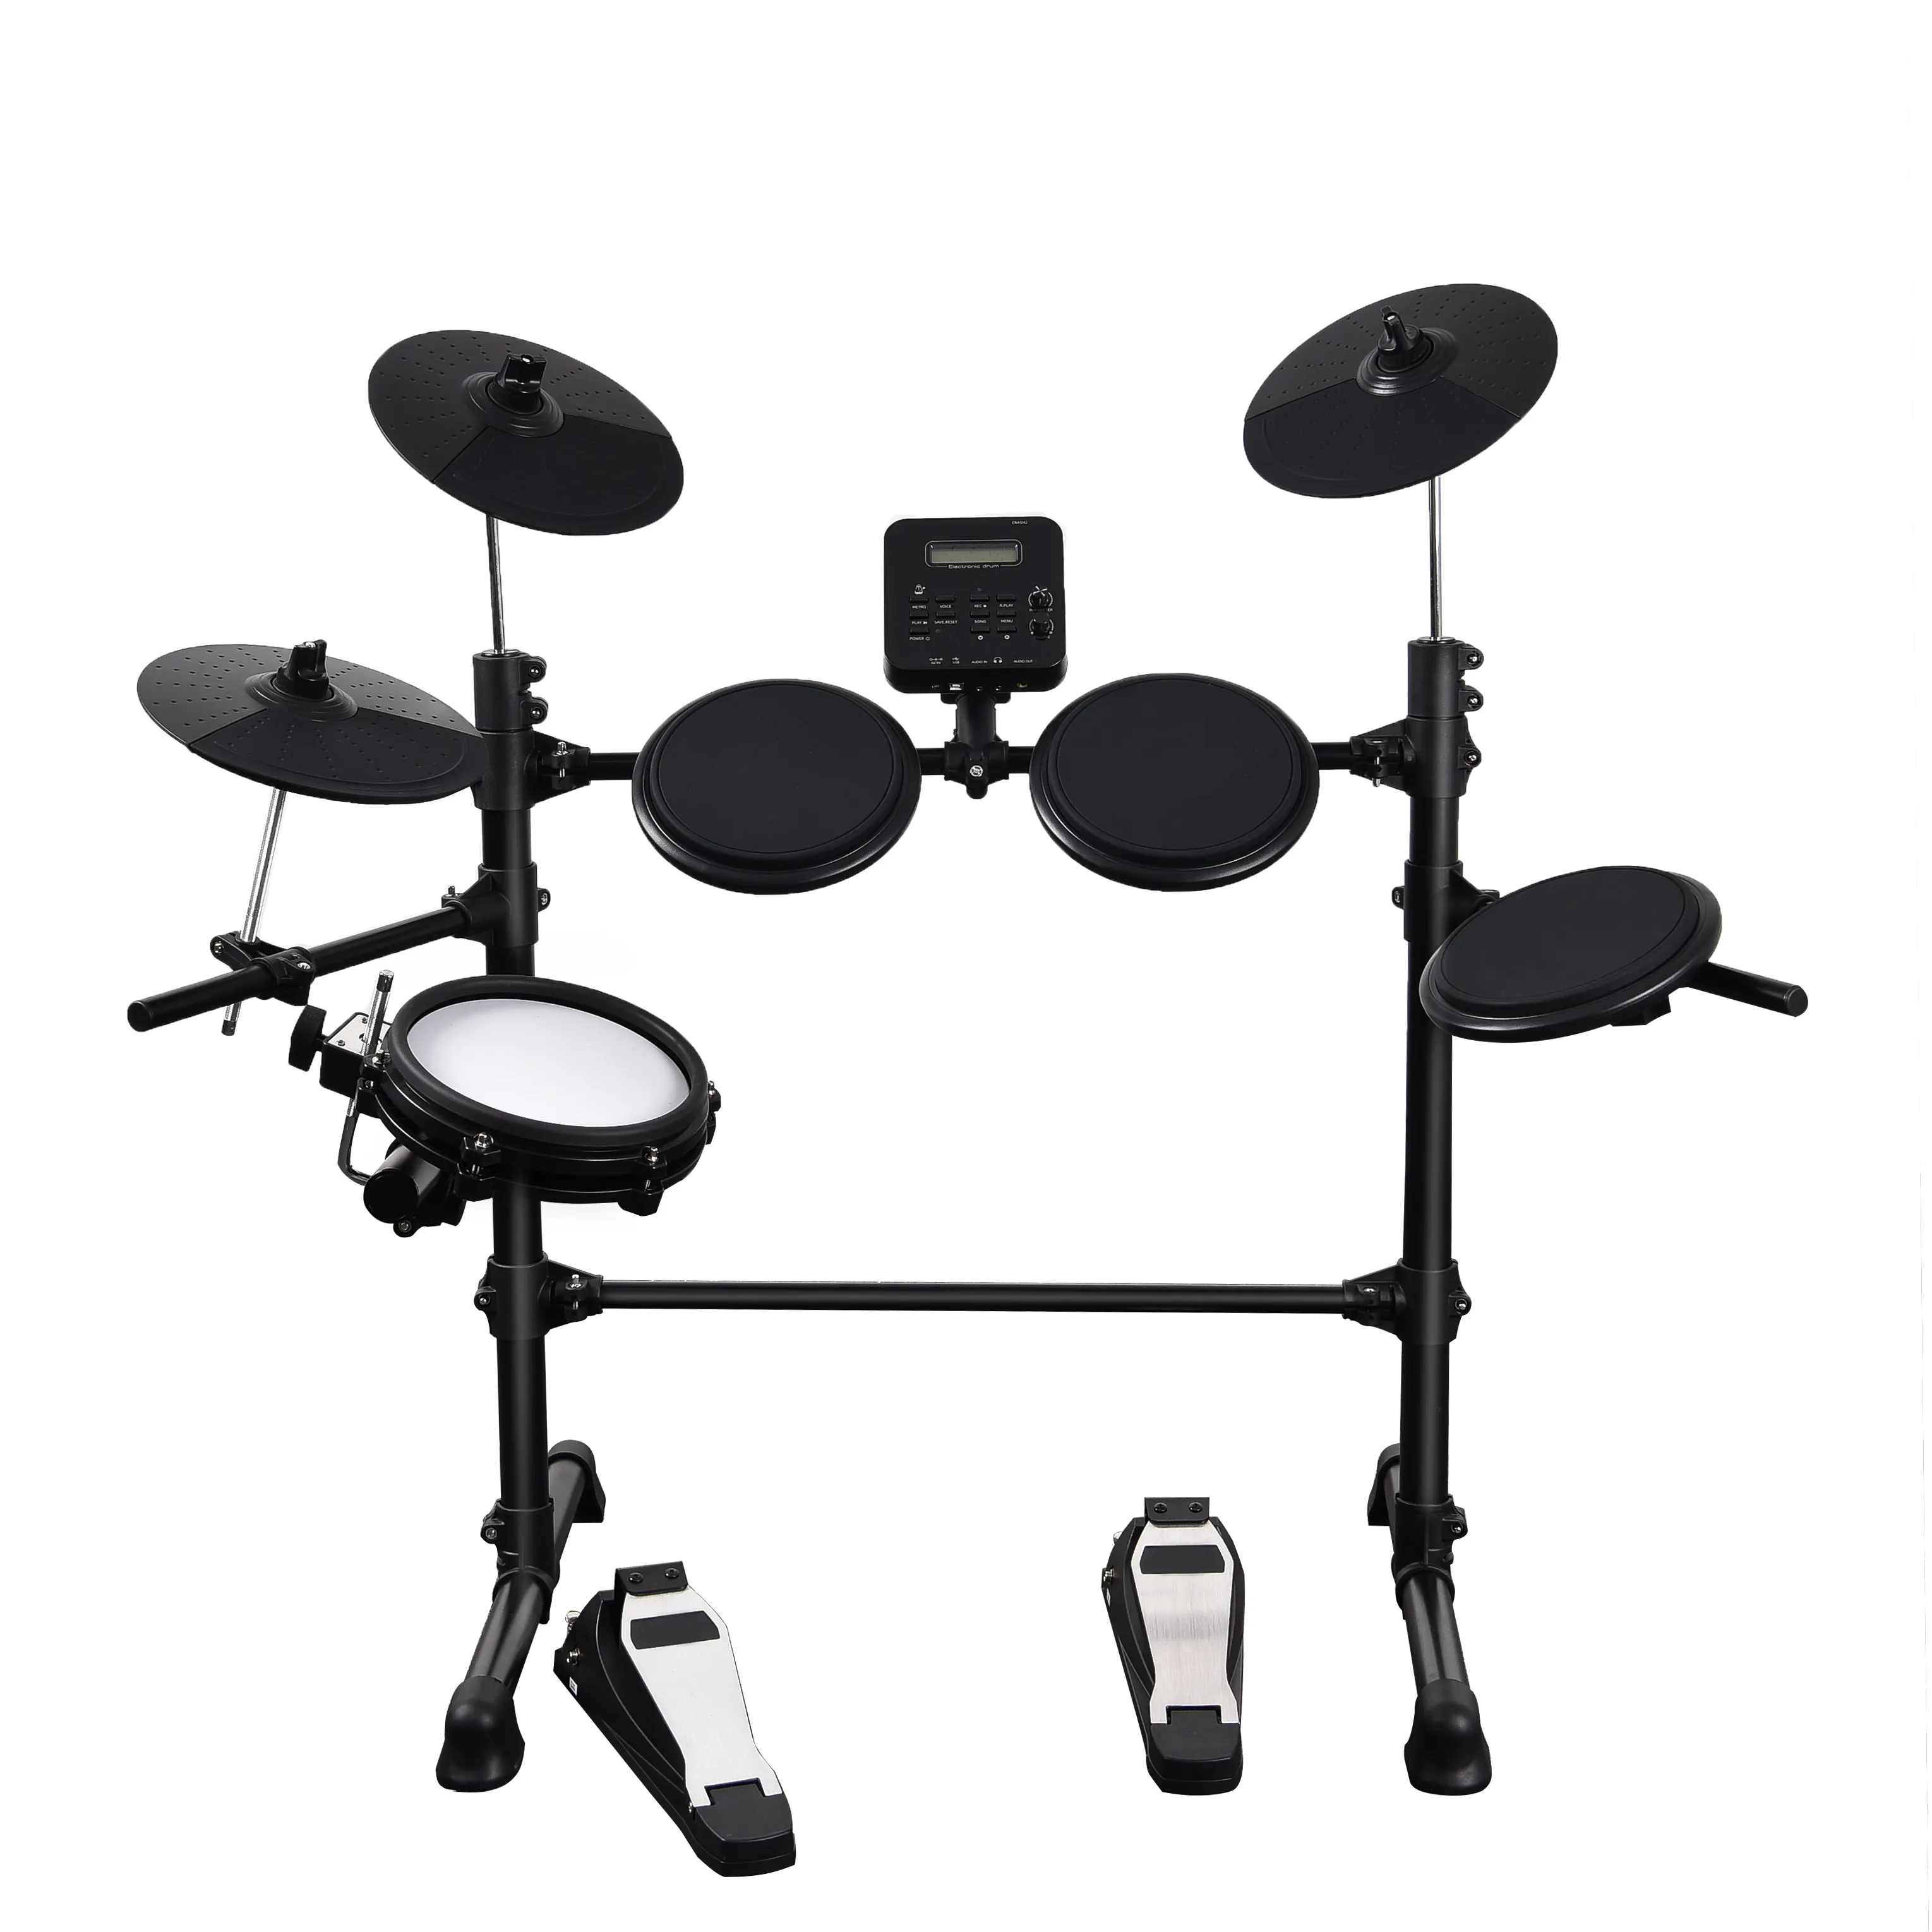 Grosir 5 Drum 3 Simbal Drum Elektronik Set Perkusi Bermerek Drum Anak